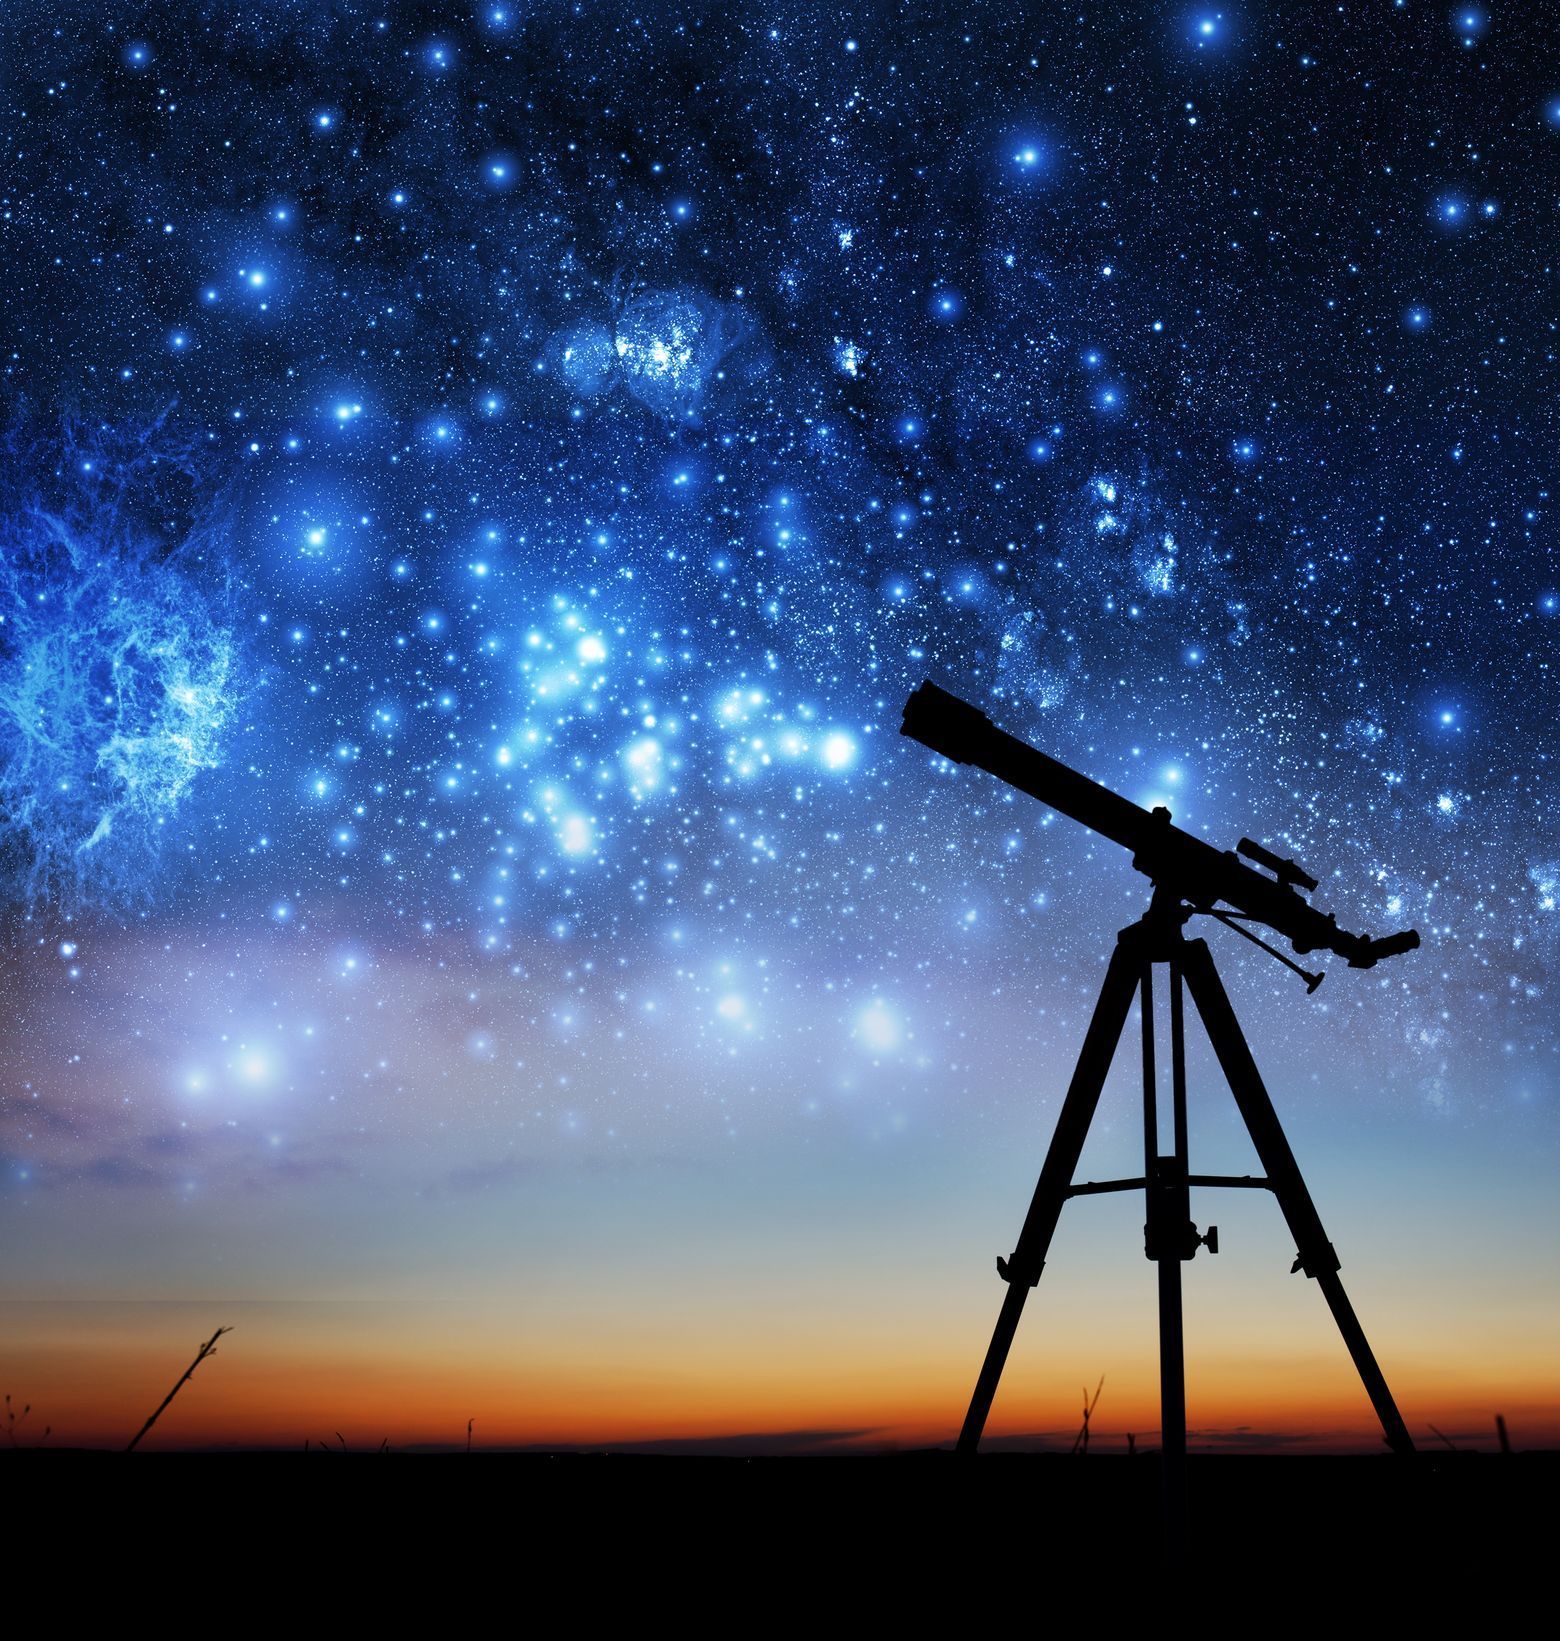 Vesmír - pozorování, dalekohled, teleskop, expanze, rozpínání